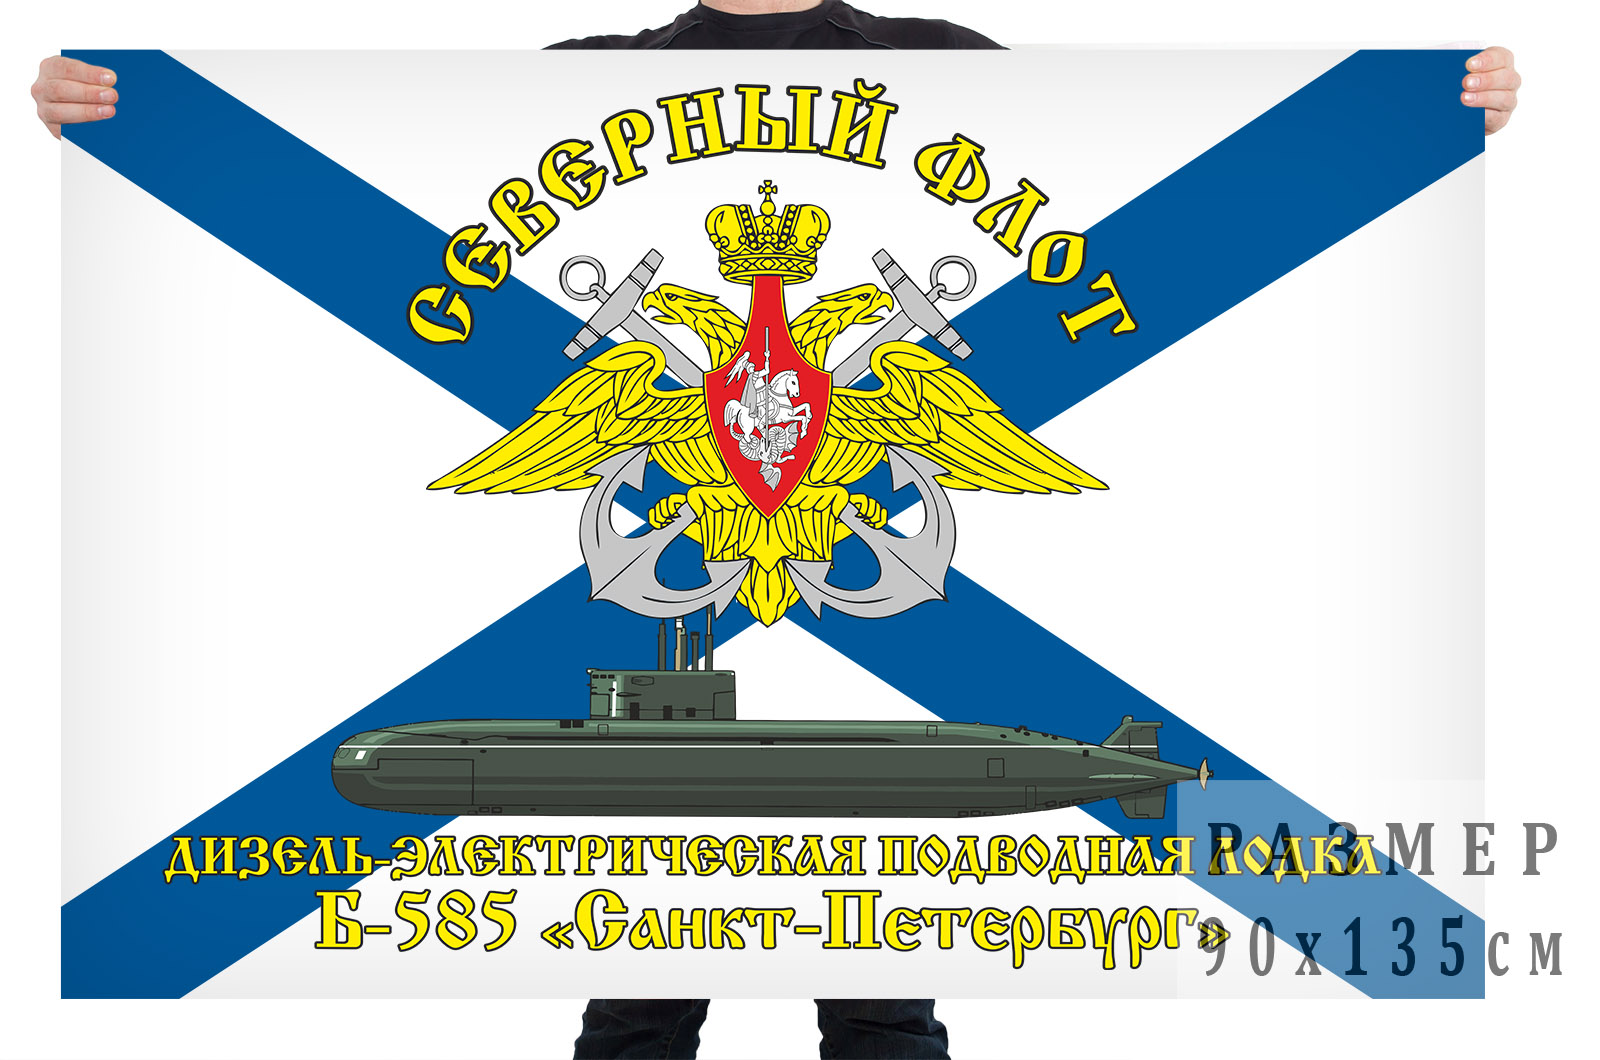 Флаг дизель-электрической подводной лодки Б-585 "Санкт-Петербург"